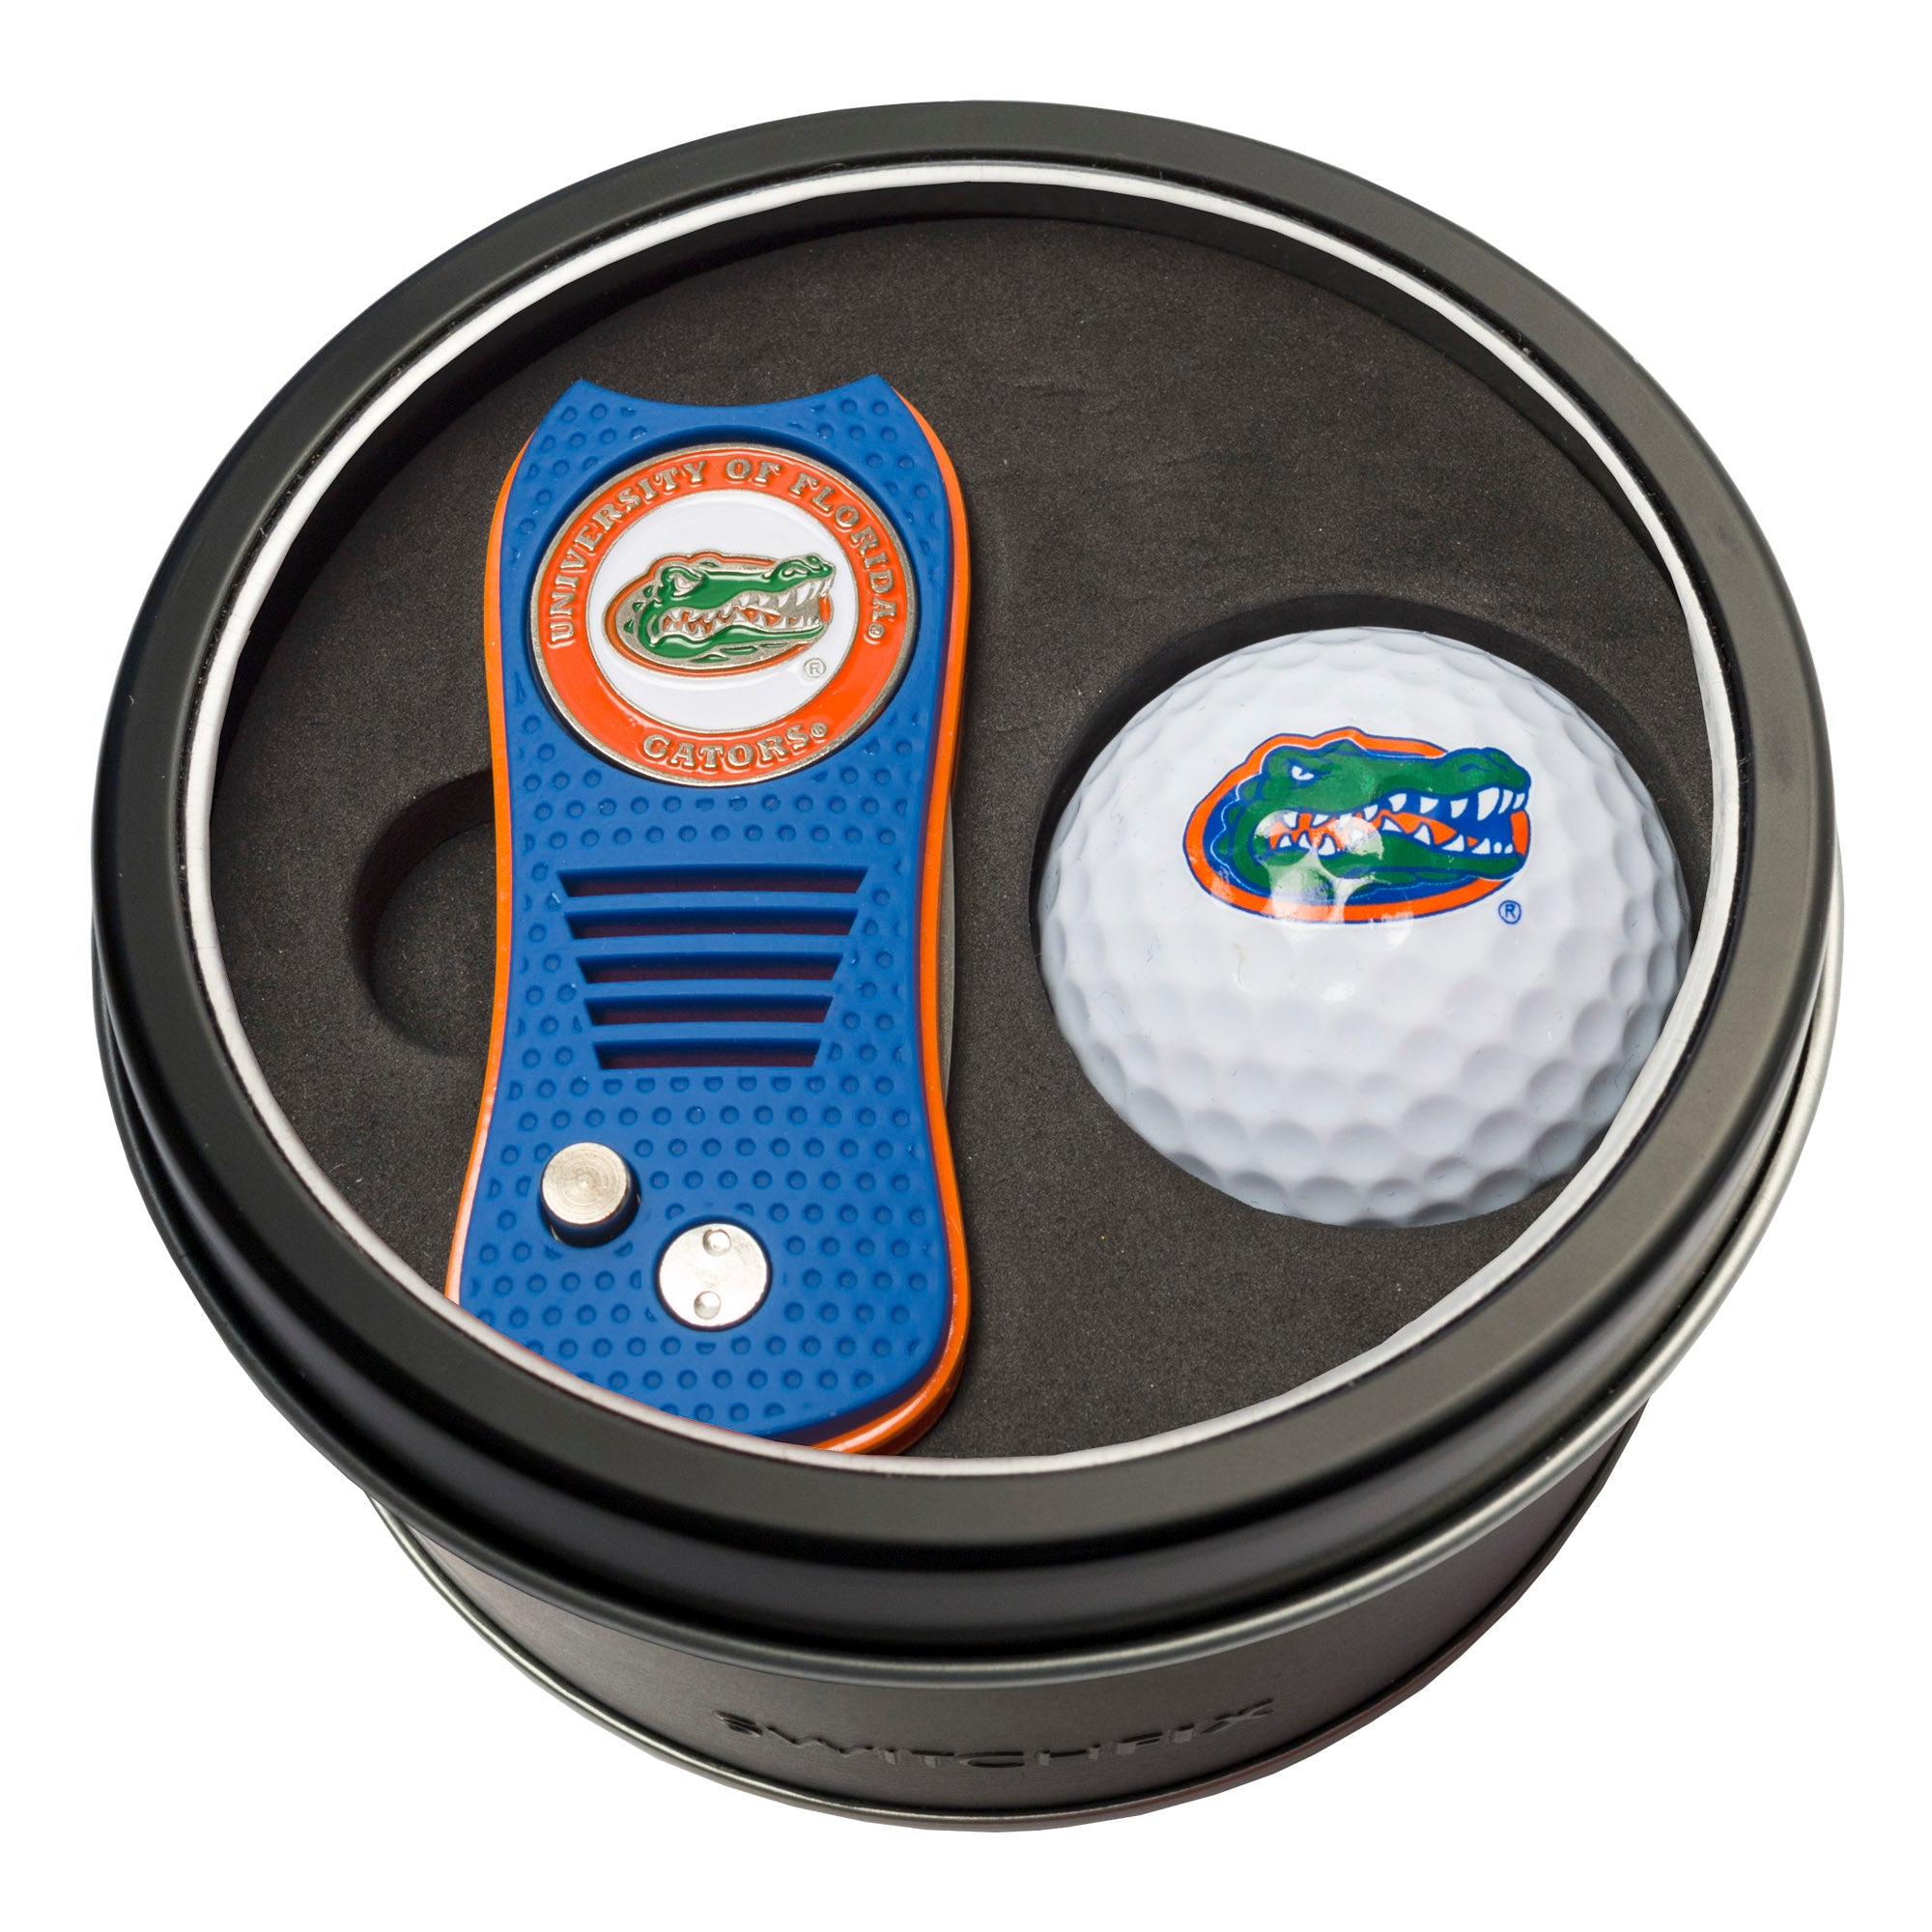 Florida Gators Switchblade Divot Tool + Golf Ball Tin Gift Set